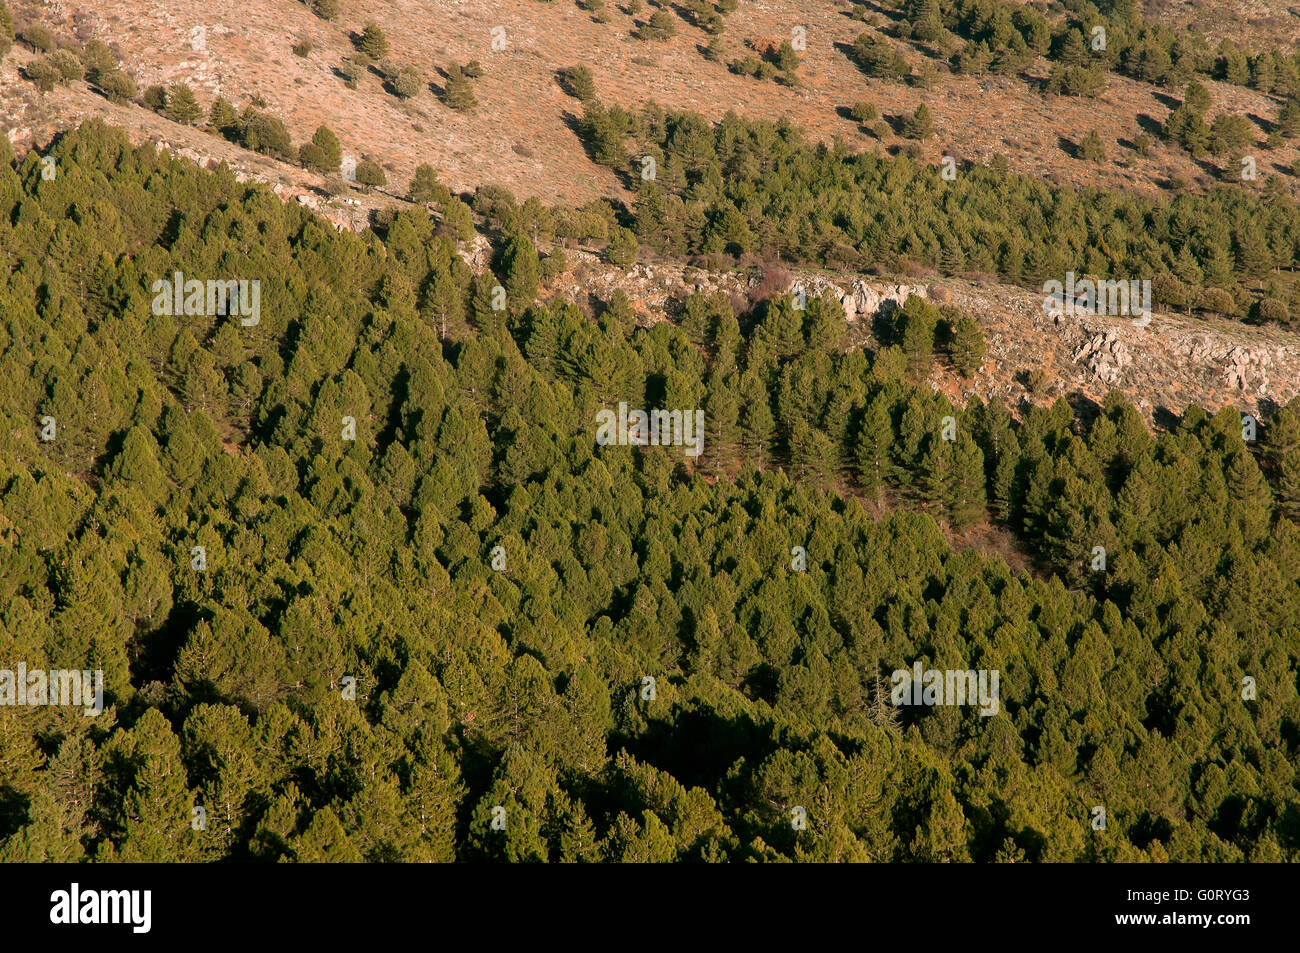 Forêt de pins, parc national de la sierra Nevada, Granada province, région d'Andalousie, Espagne, Europe Banque D'Images